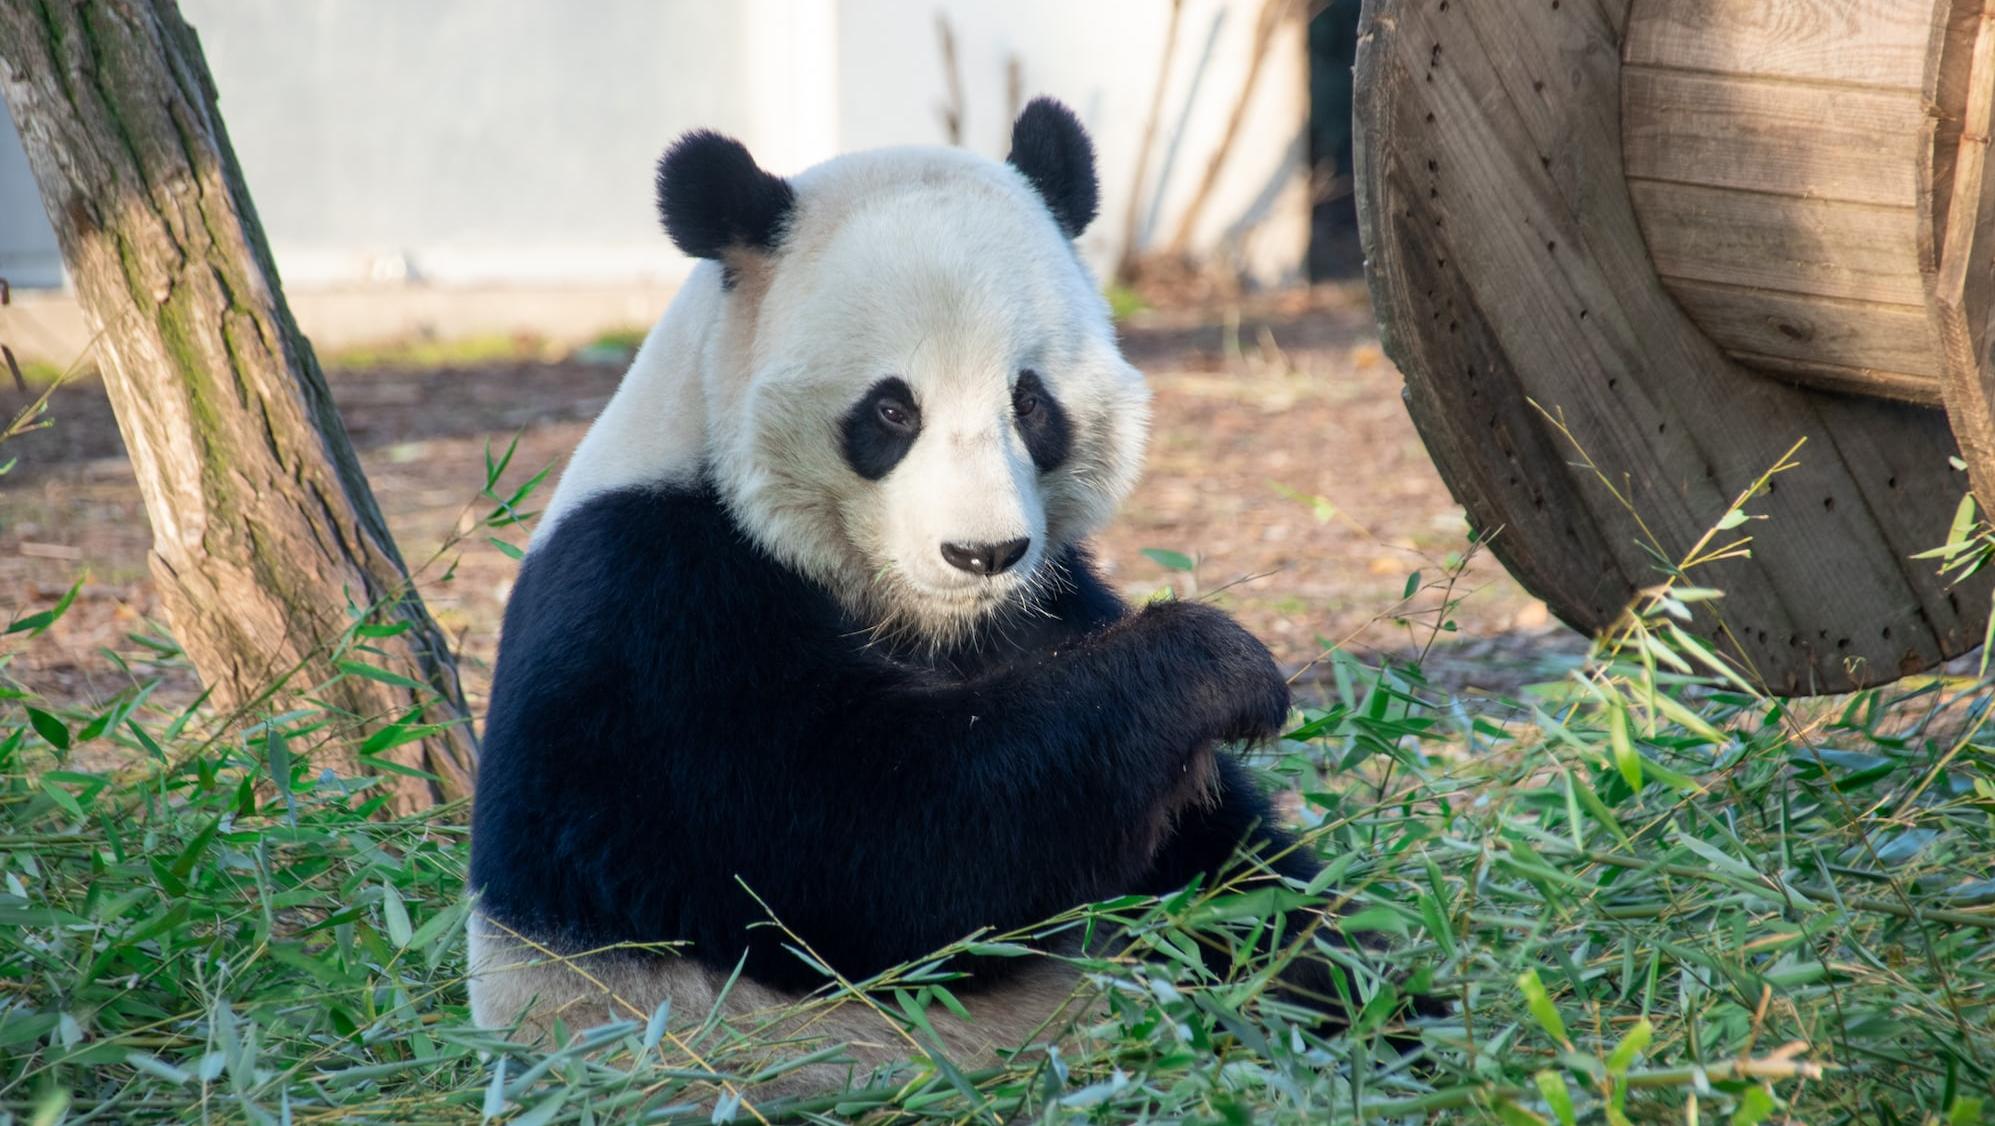 游客私自投喂竹笋花生，可能会对大熊猫造成哪些伤害？